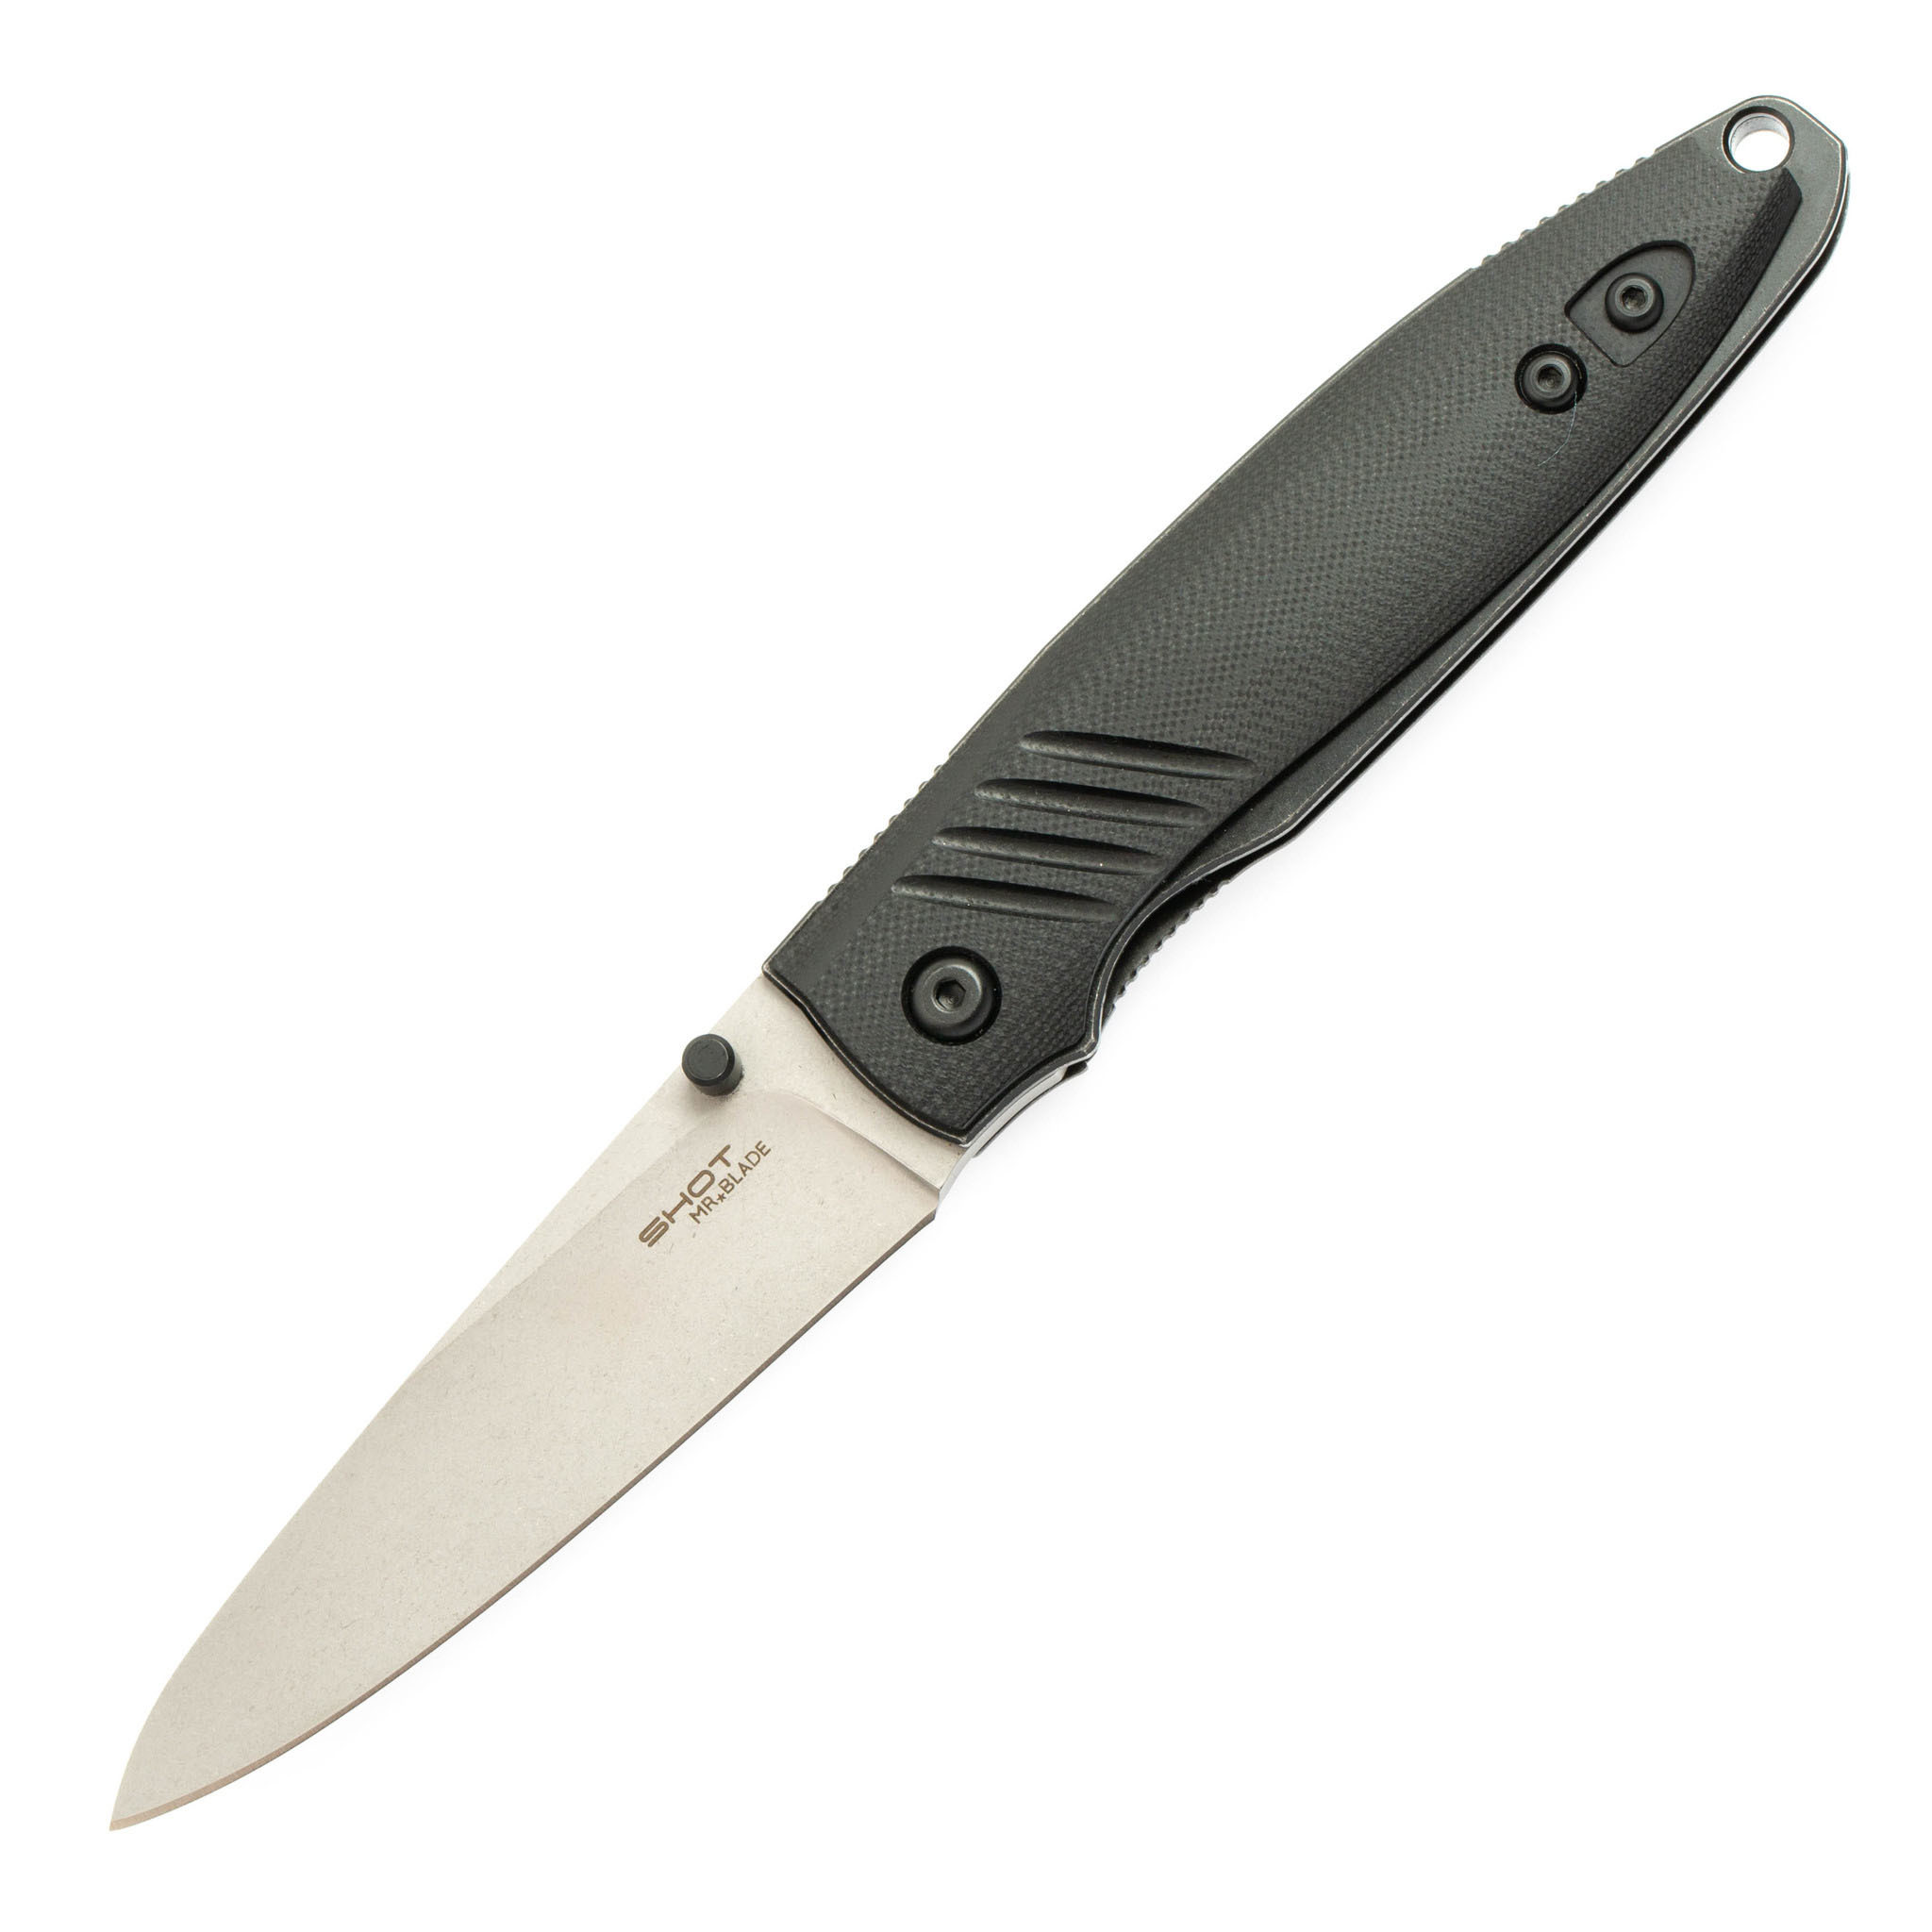 Складной нож Shot Stonewash, Mr.Blade полуавтоматический складной нож rat 1a assisted   blade olive drab g 10 handle